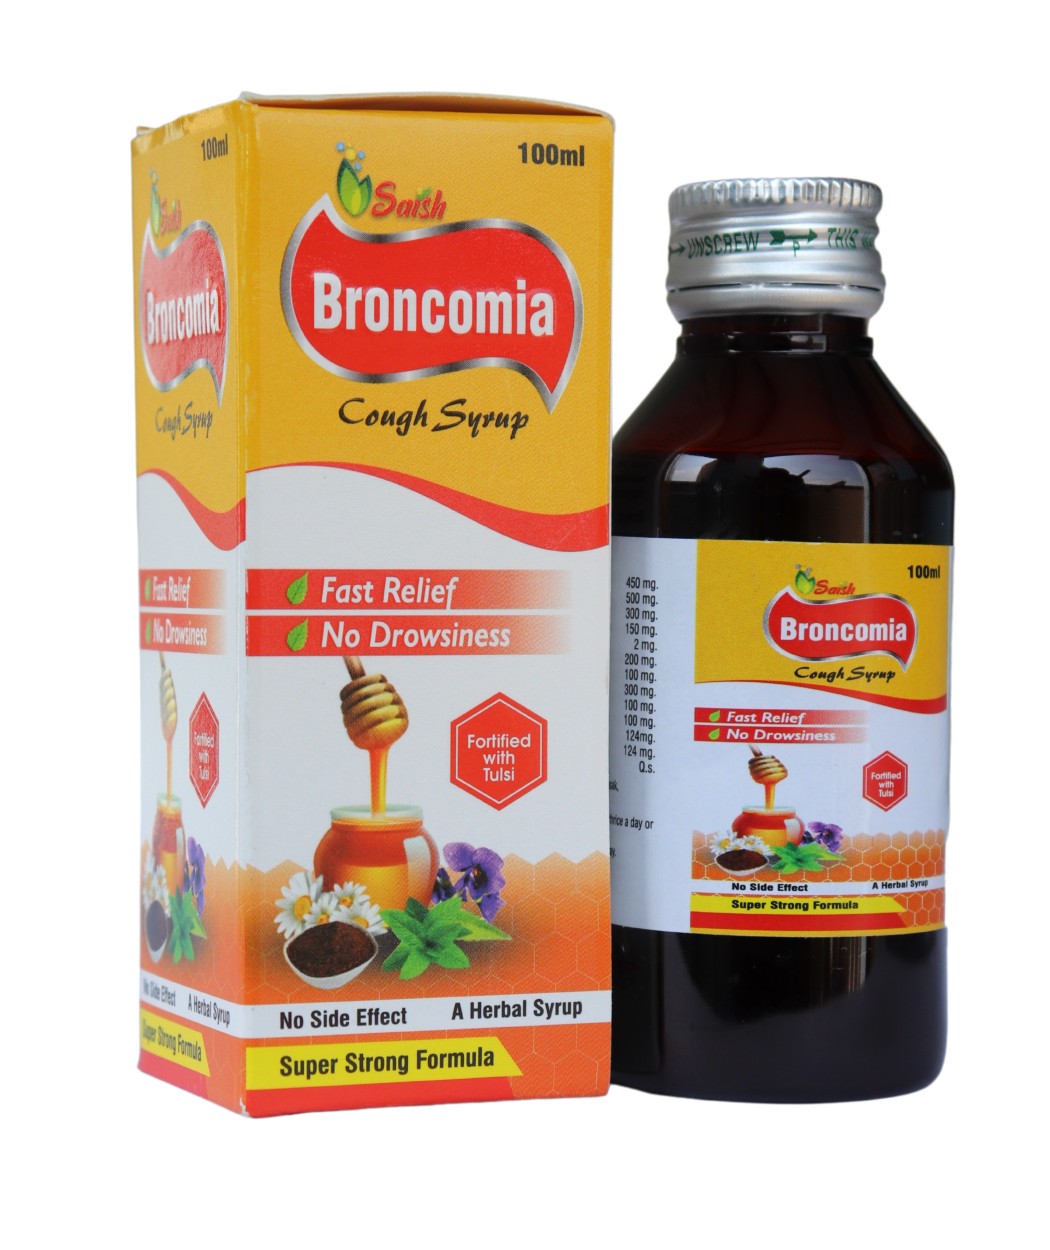 Broncomia Cough Syrup